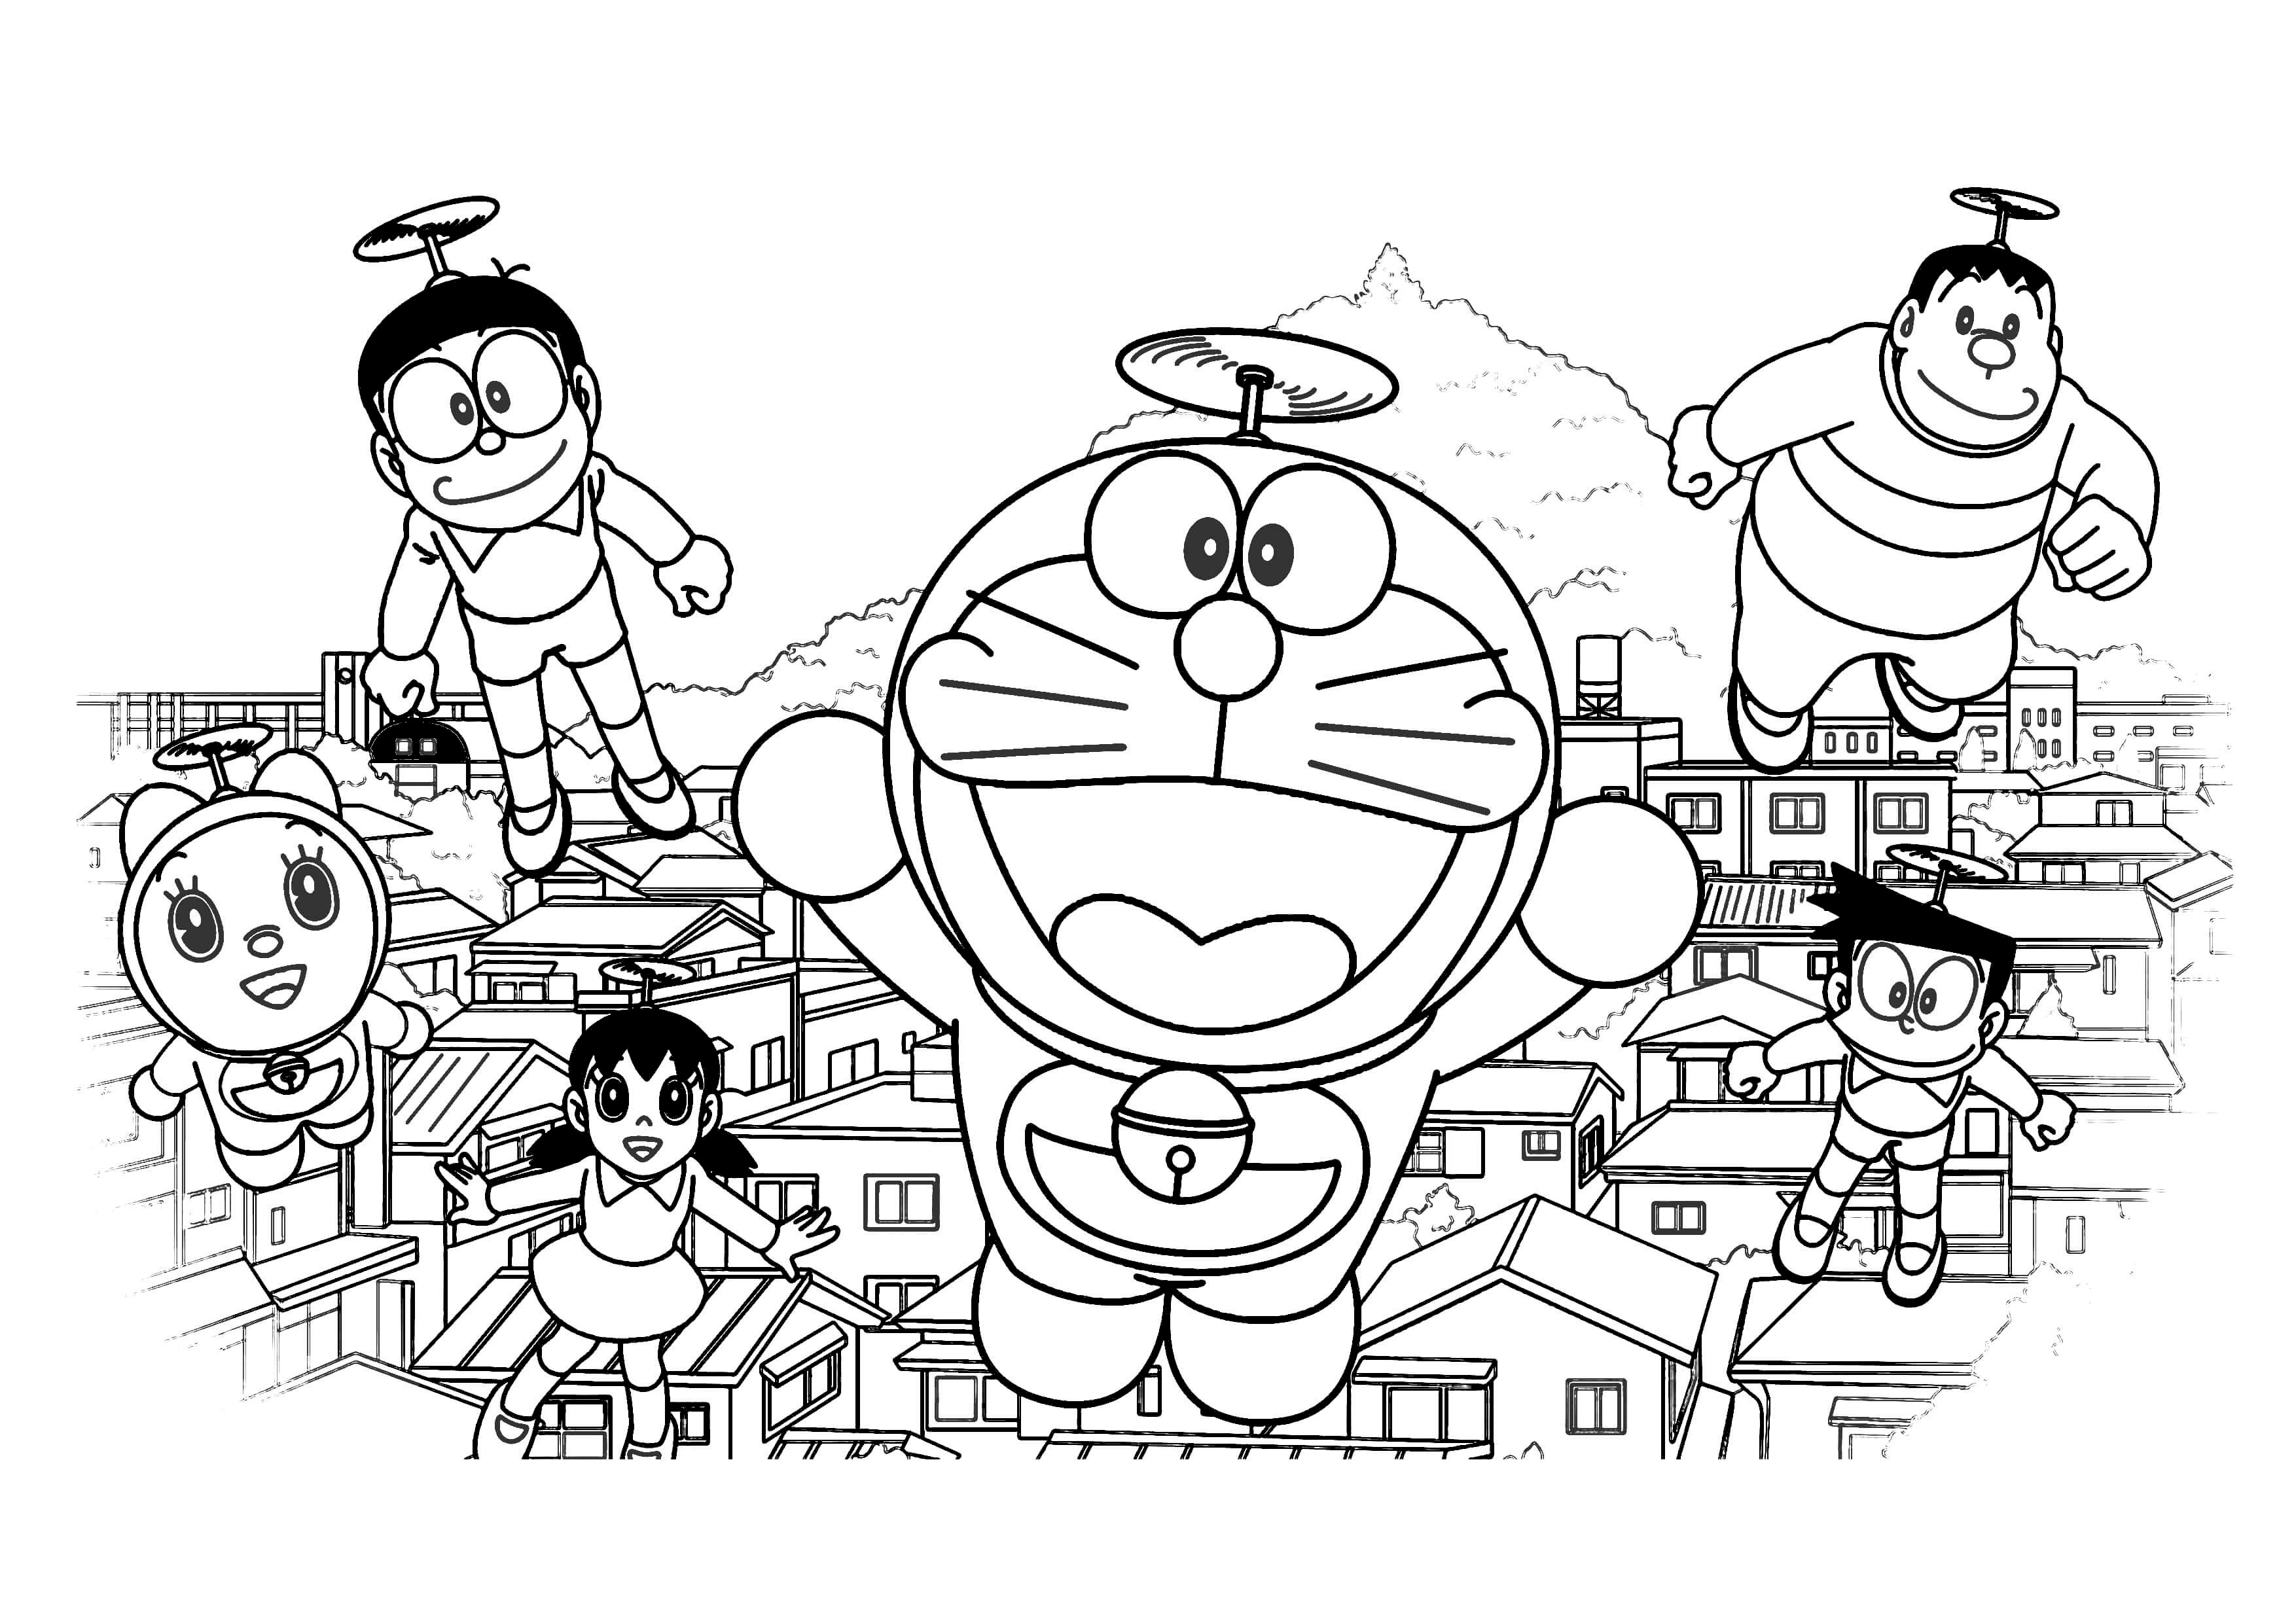 Tranh tô màu Doremon và Nobita bay bằng chong chóng tre